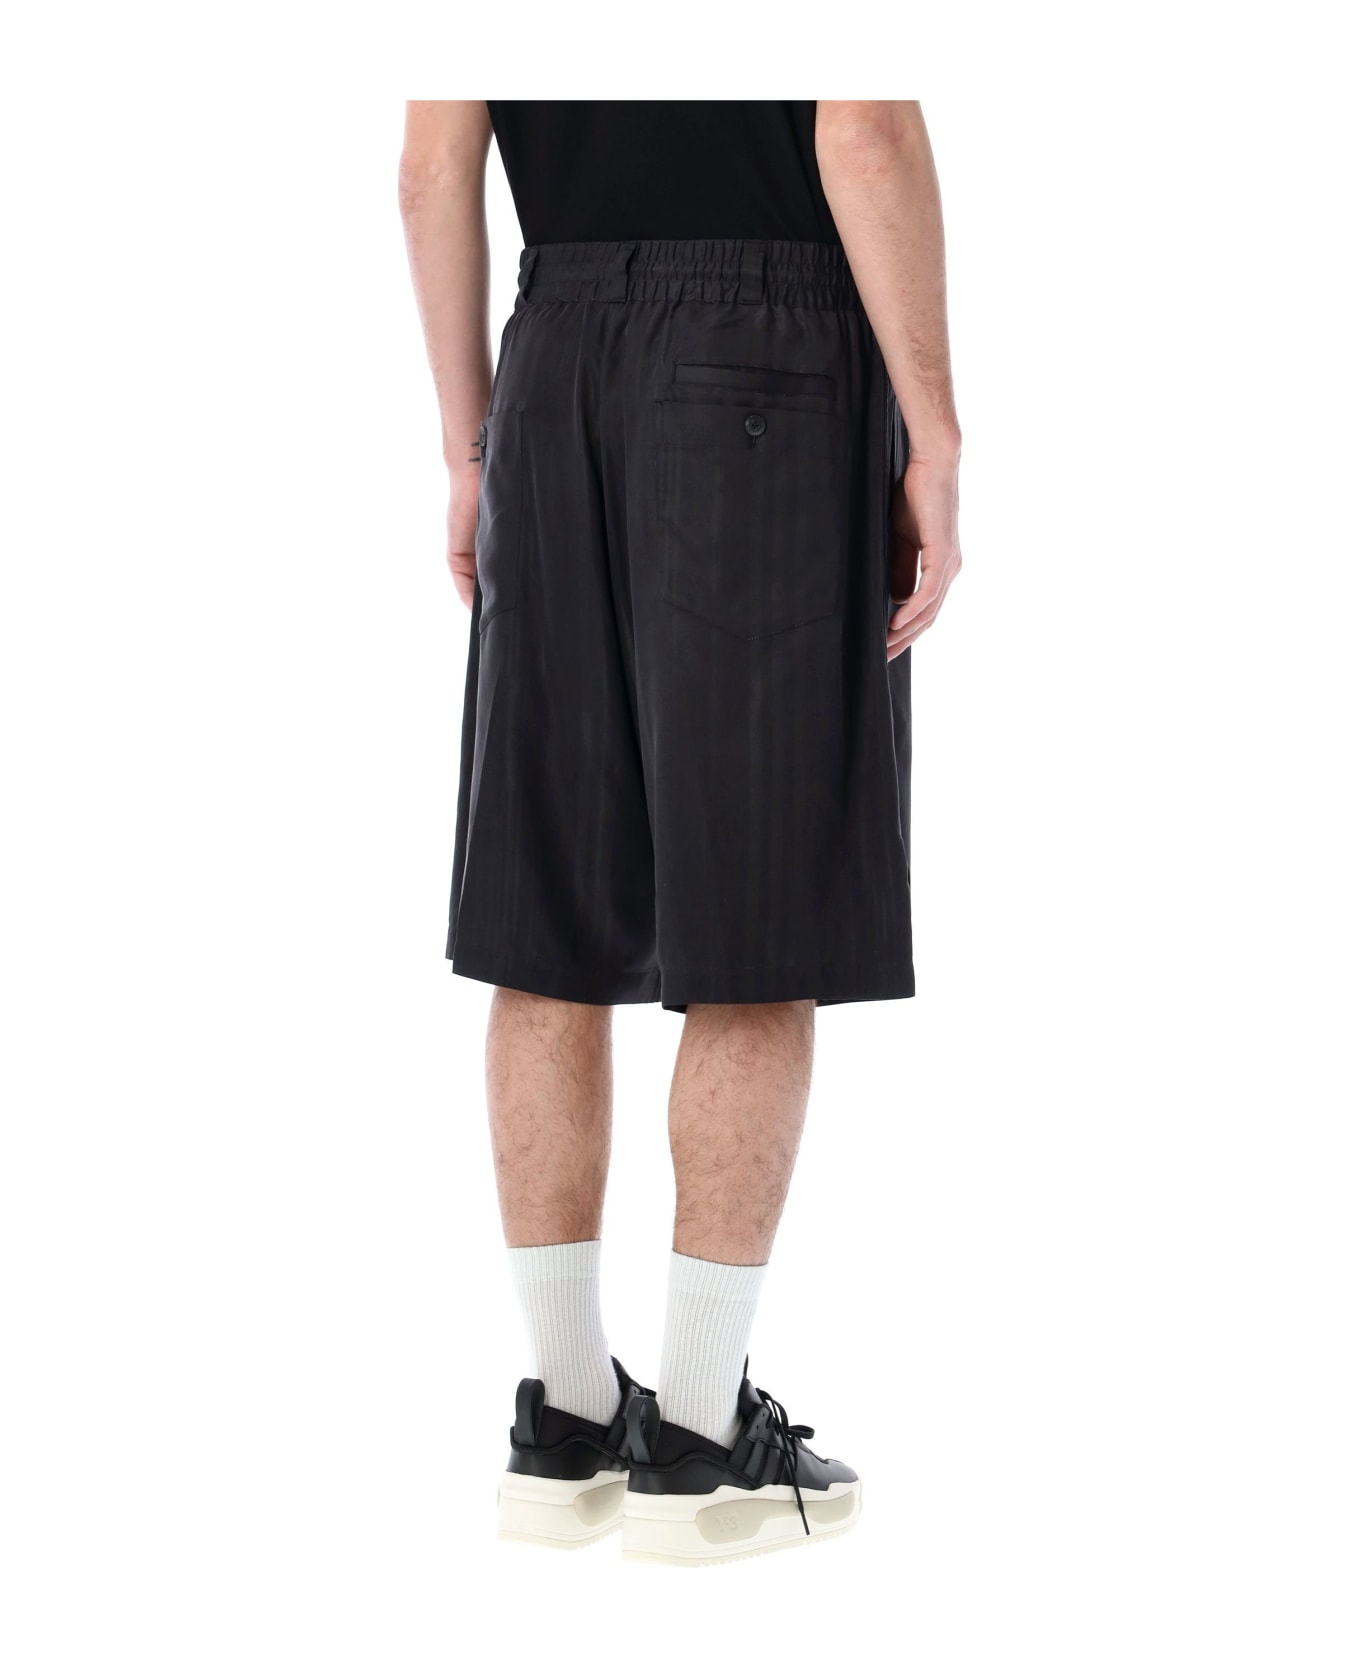 Y-3 3-stripes Shorts - BLACK ショートパンツ